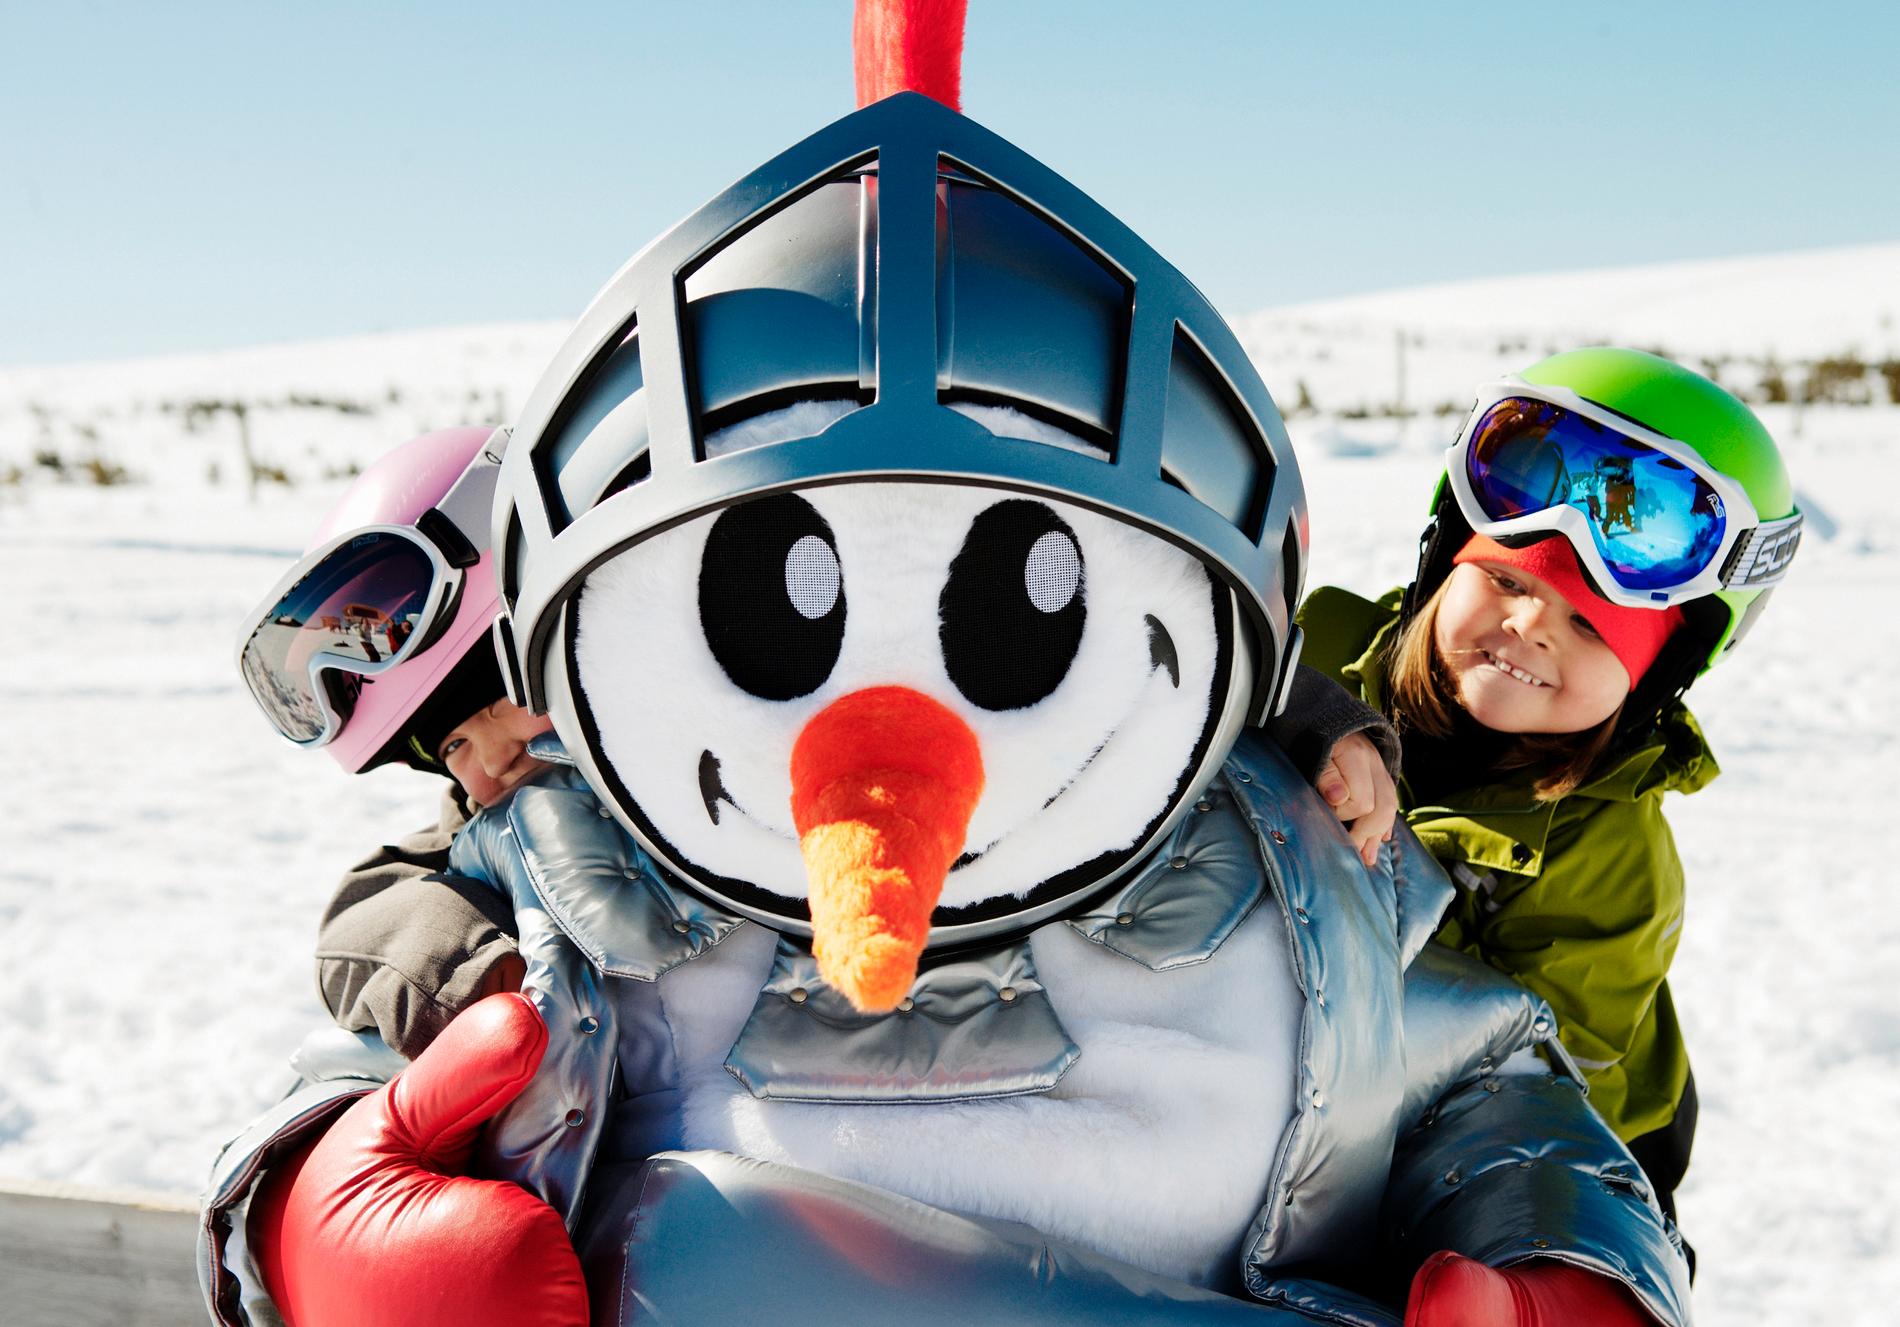 Snögubben Valle är en symbol för Skistars skidskolor för barn. En tredagarskurs för barn från 3 år kostar 850 kronor.